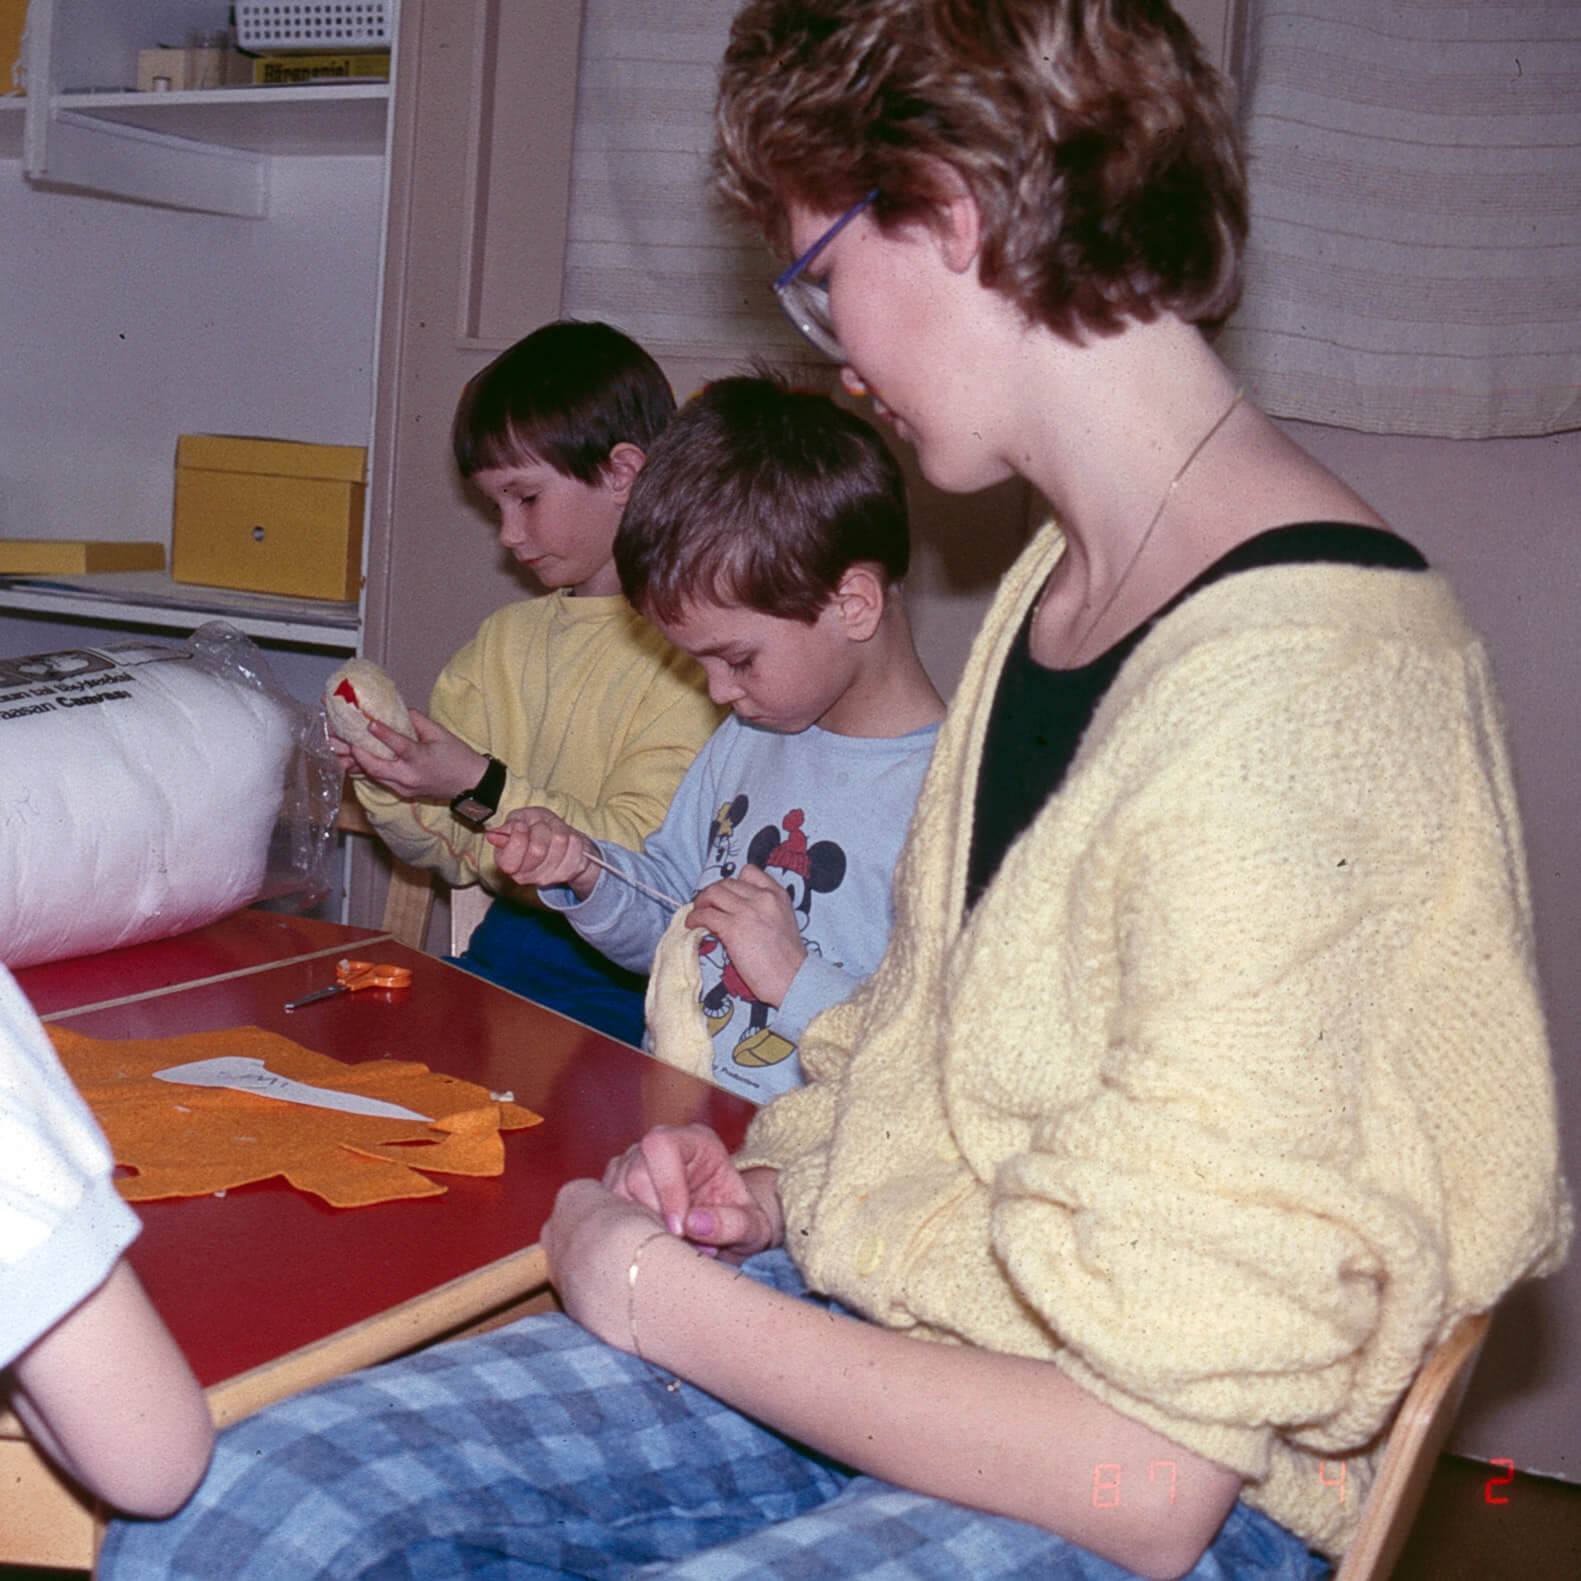 Kuvassa punapintainen tyypillinen 1970-80-luvun päiväkodin pöytä, jonka ääressä lapset askartelevat ilmeisesti kanoja tai tipuja. Yksi lapsi ompelee huopaista keltaista hahmoa ja toinen lapsi täyttää omaa hahmoaan vanulla. Aikuinen katsoo lasten toimintaa vieressä. Pöydällä on oranssia huopaa sekä sakset. Yksityiskokoelma.